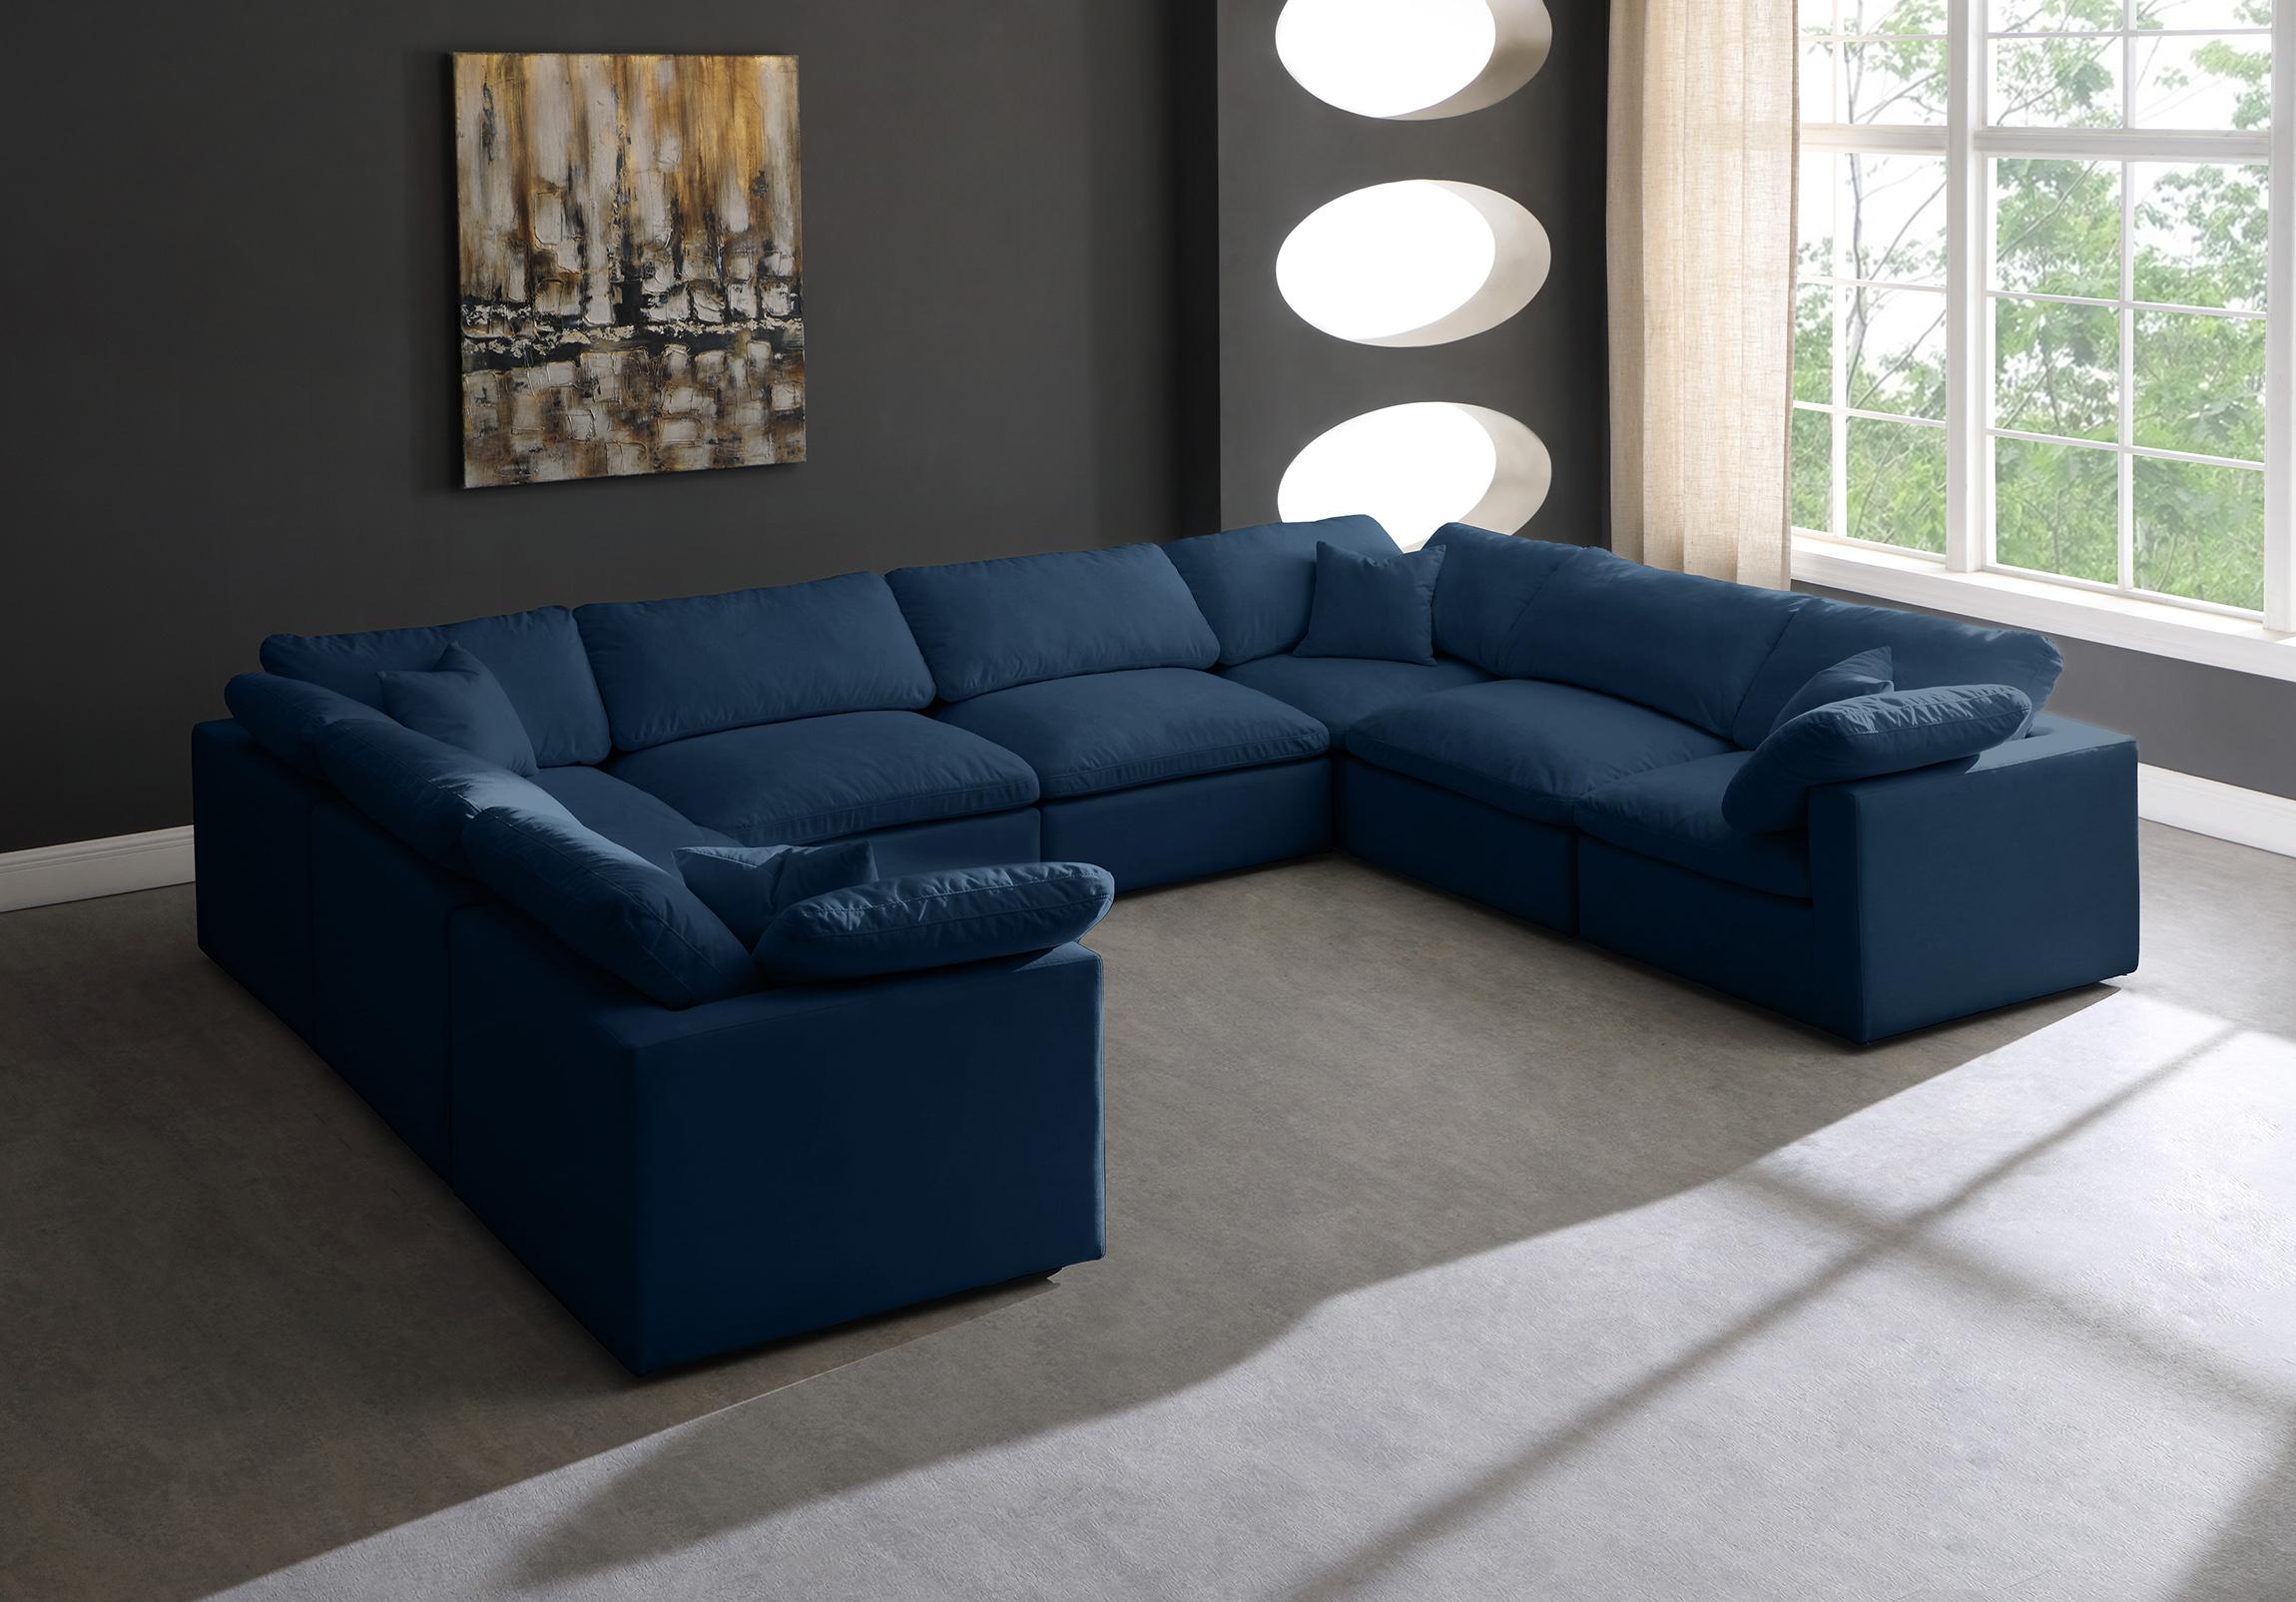 

        
Meridian Furniture 602Navy-Sec8A Modular Sectional Sofa Navy Fabric 753359805986
